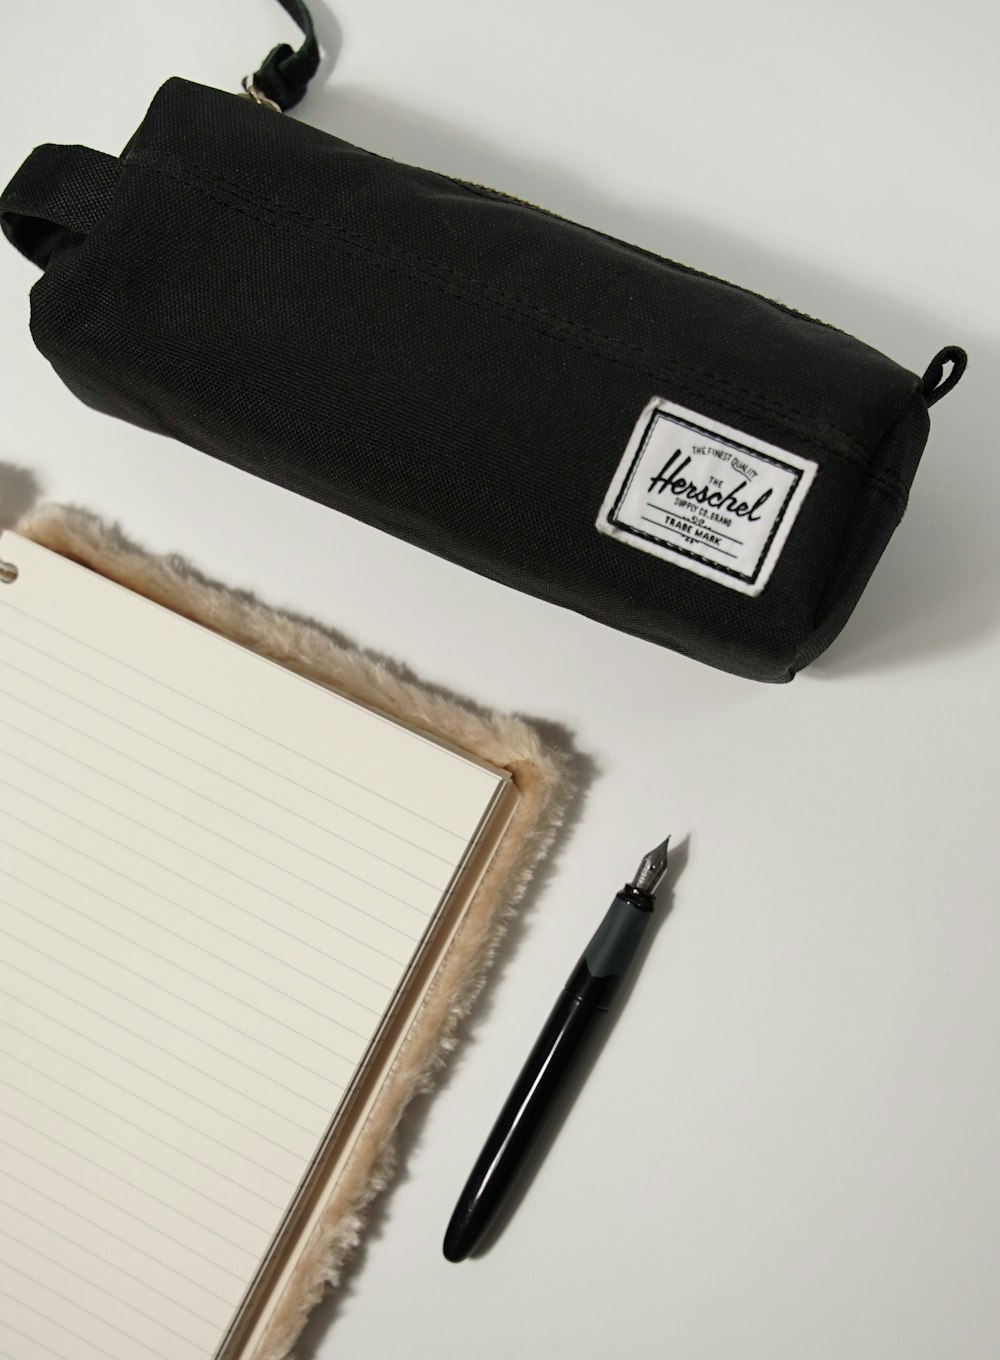 Notizblock, Stift und Bleistift auf einem Tisch